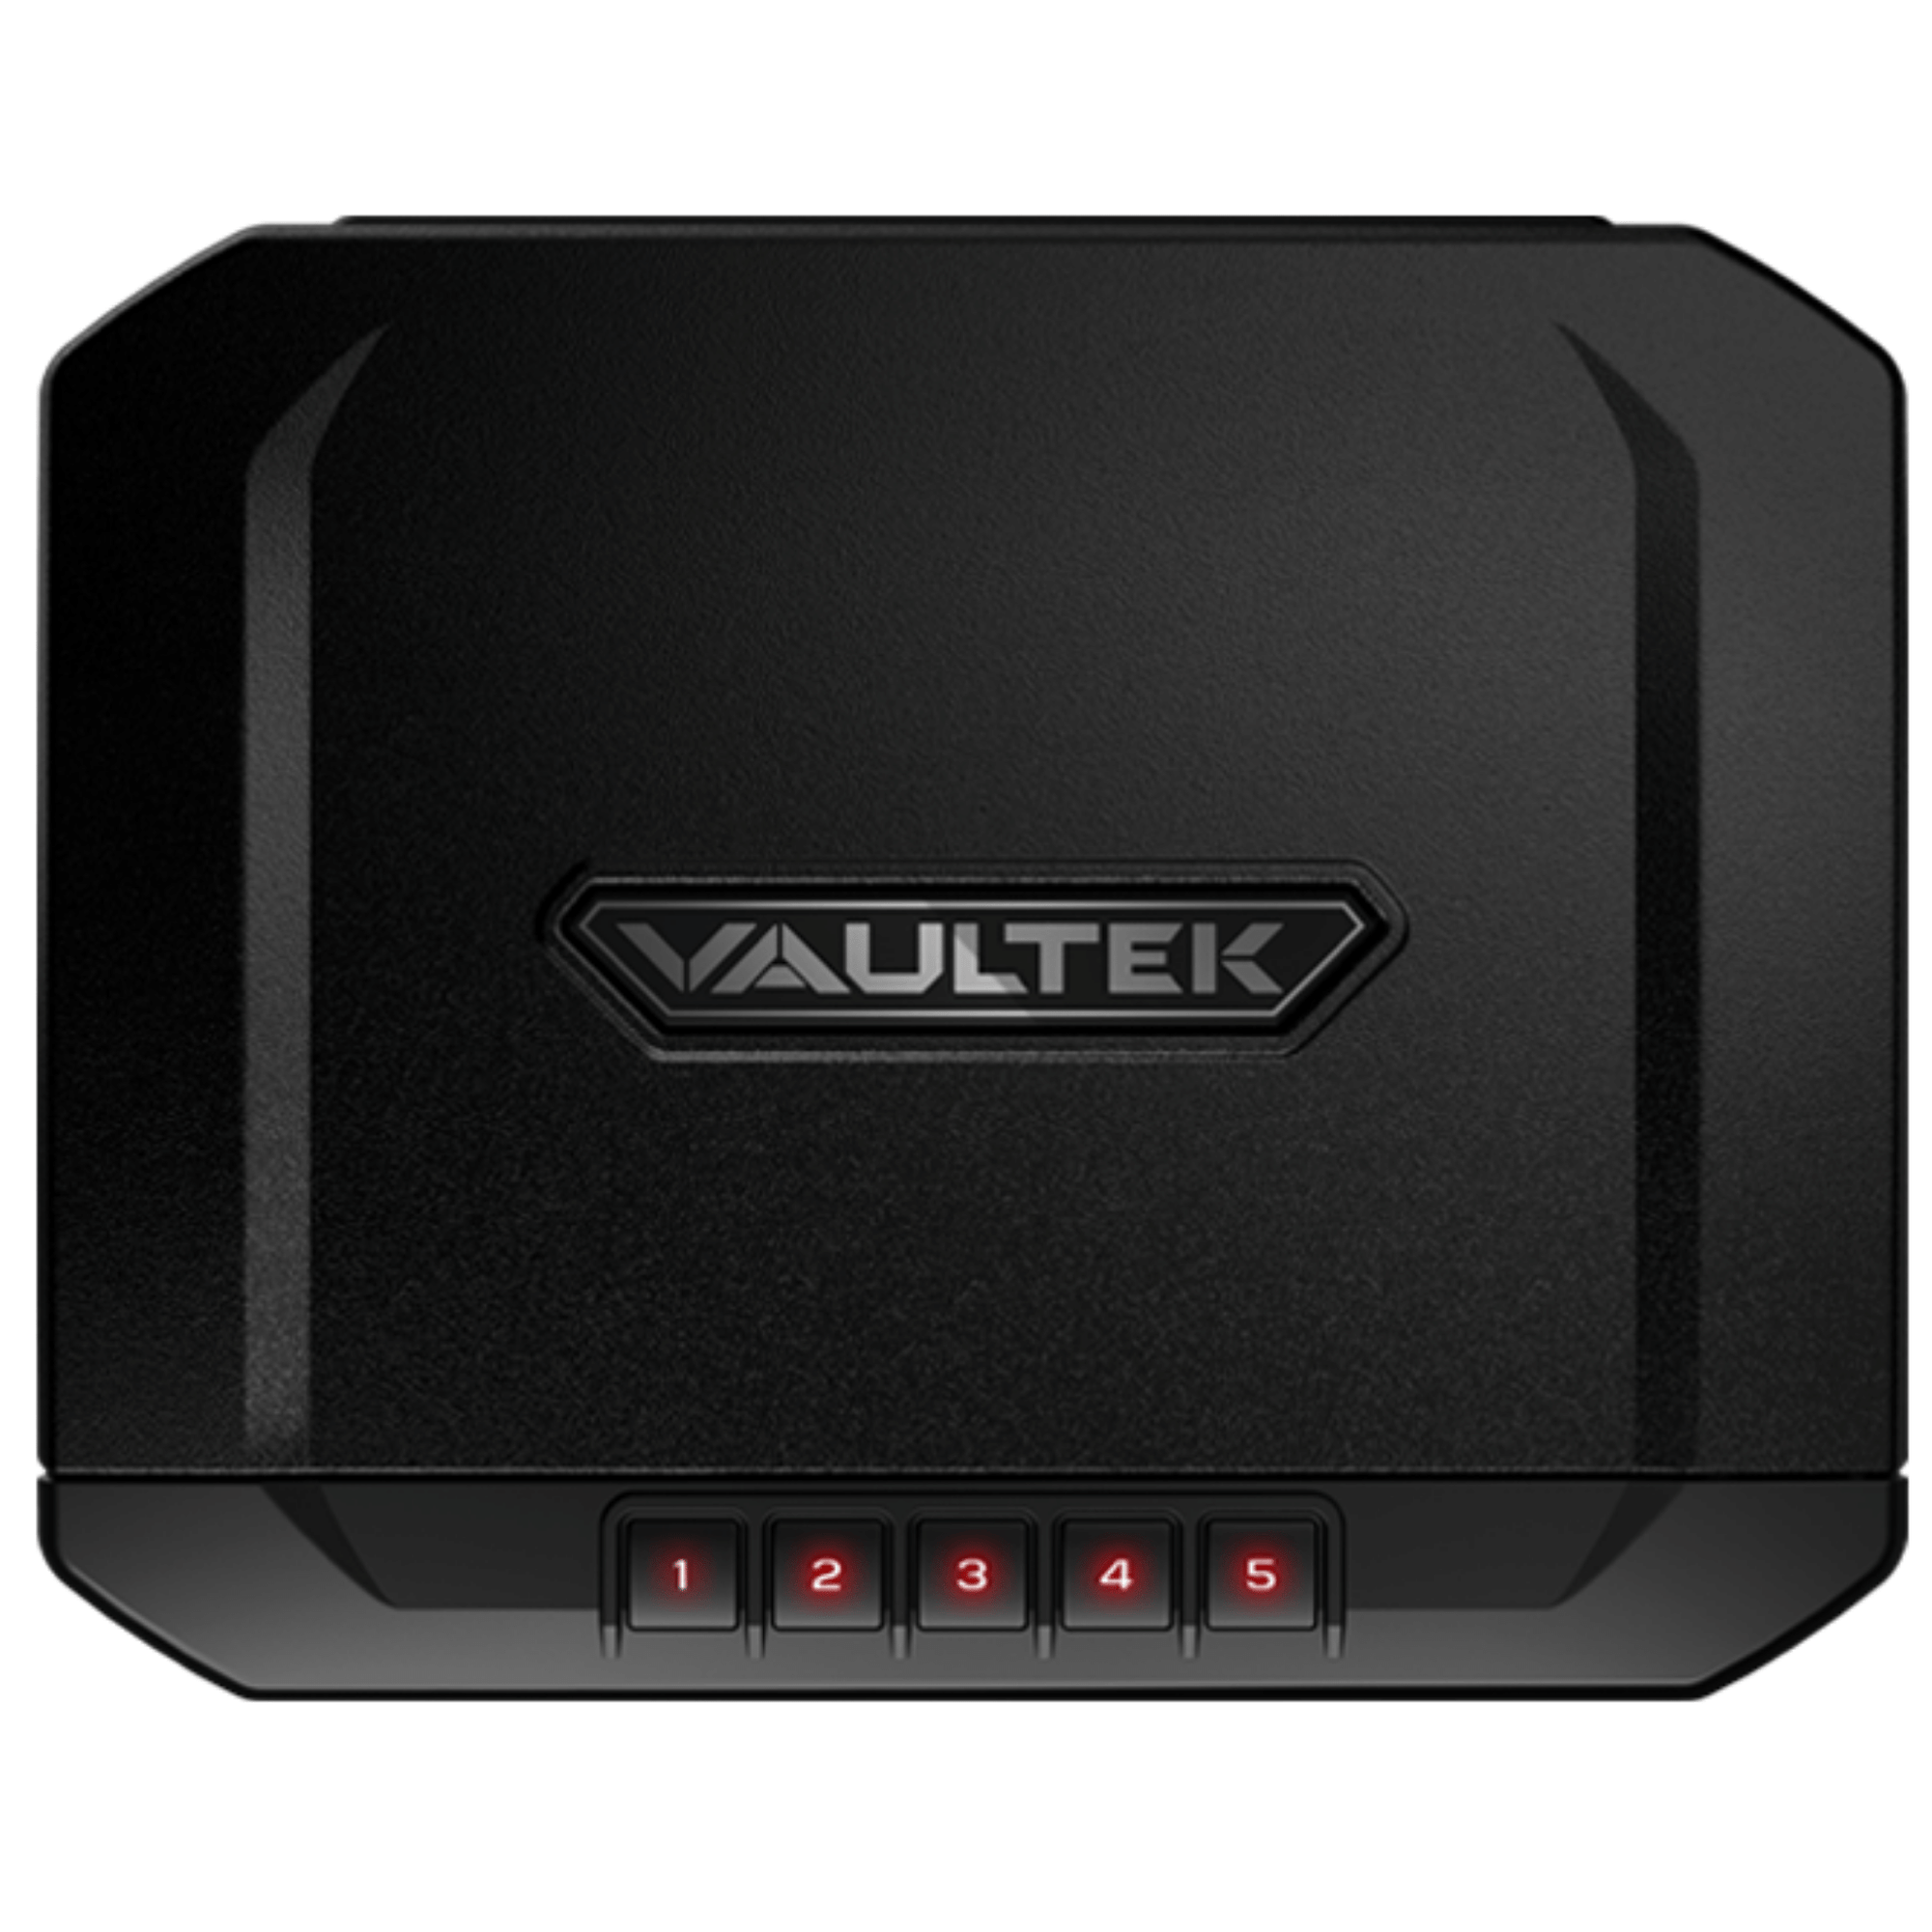 VAULTEK | VT10 - Bluetooth | Liberty Safe Norcal.